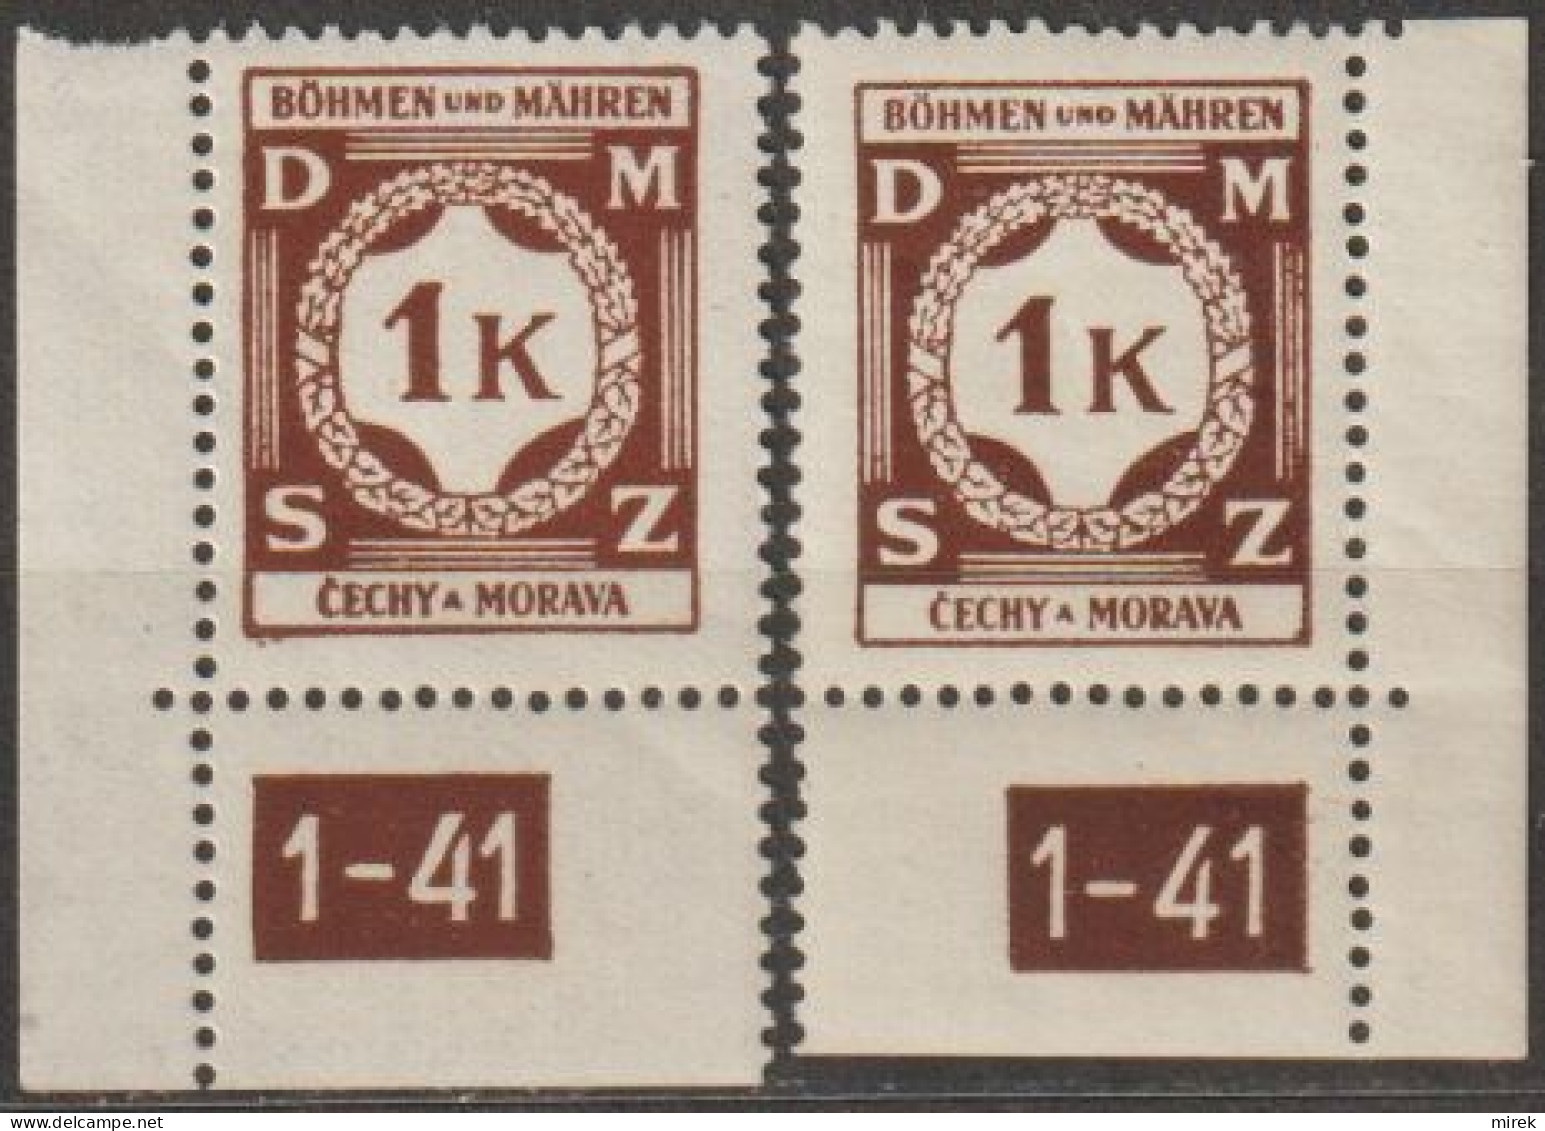 31/ Pof. SL 6, Corner Stamps, Plate Number 1-41 - Ungebraucht